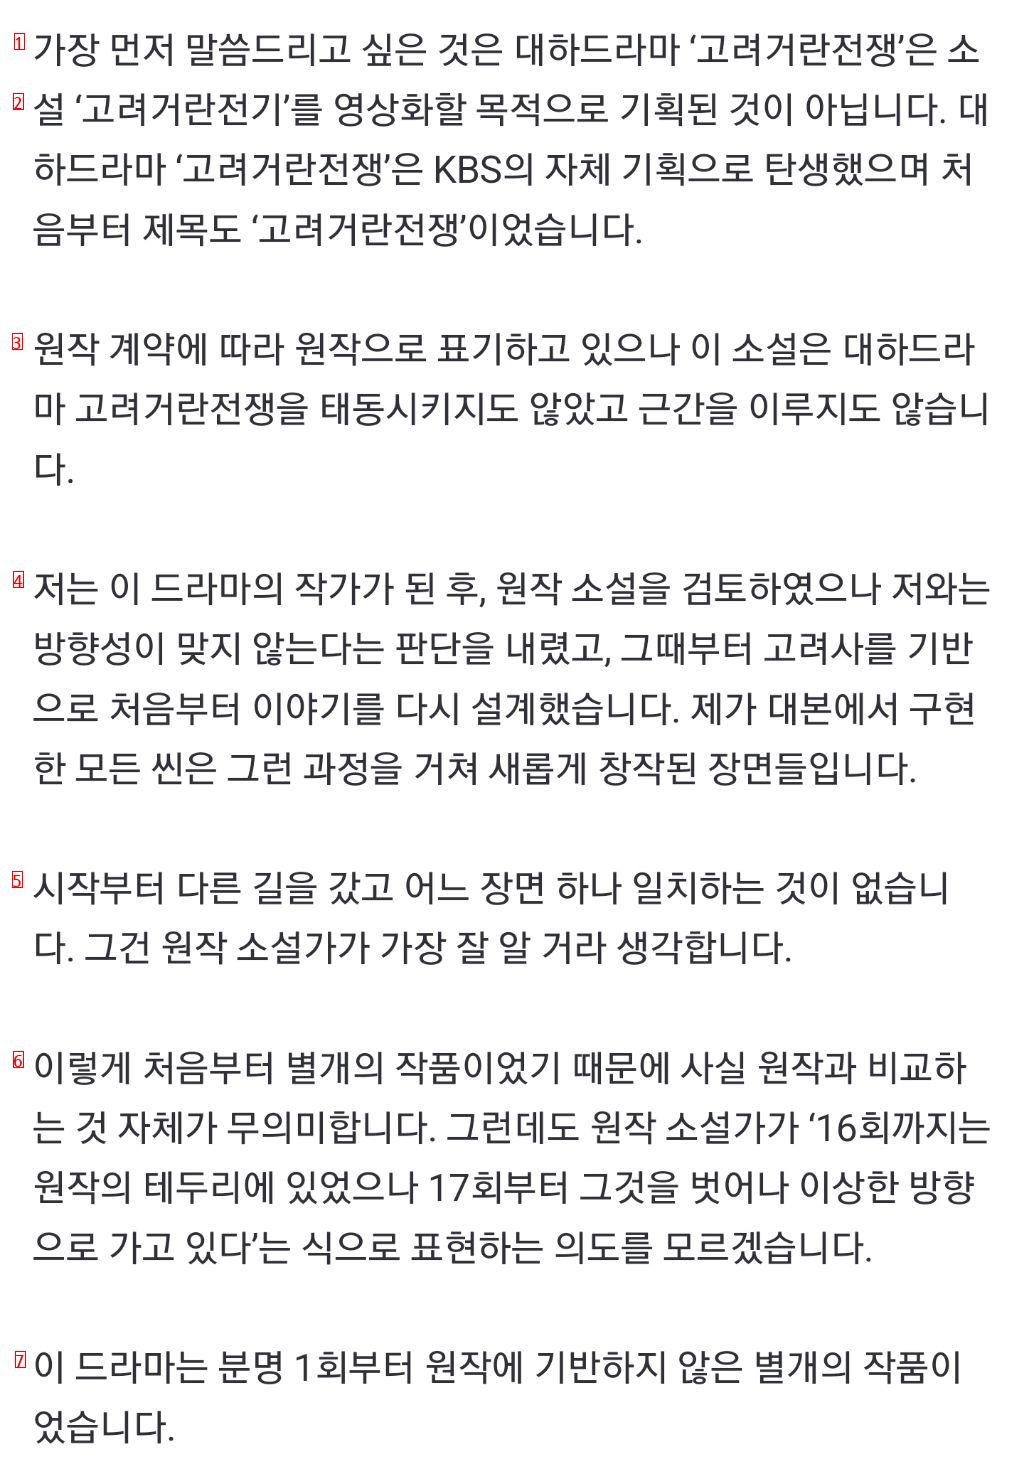 KBS「高麗契丹戦争」李廷雨作家の立場文